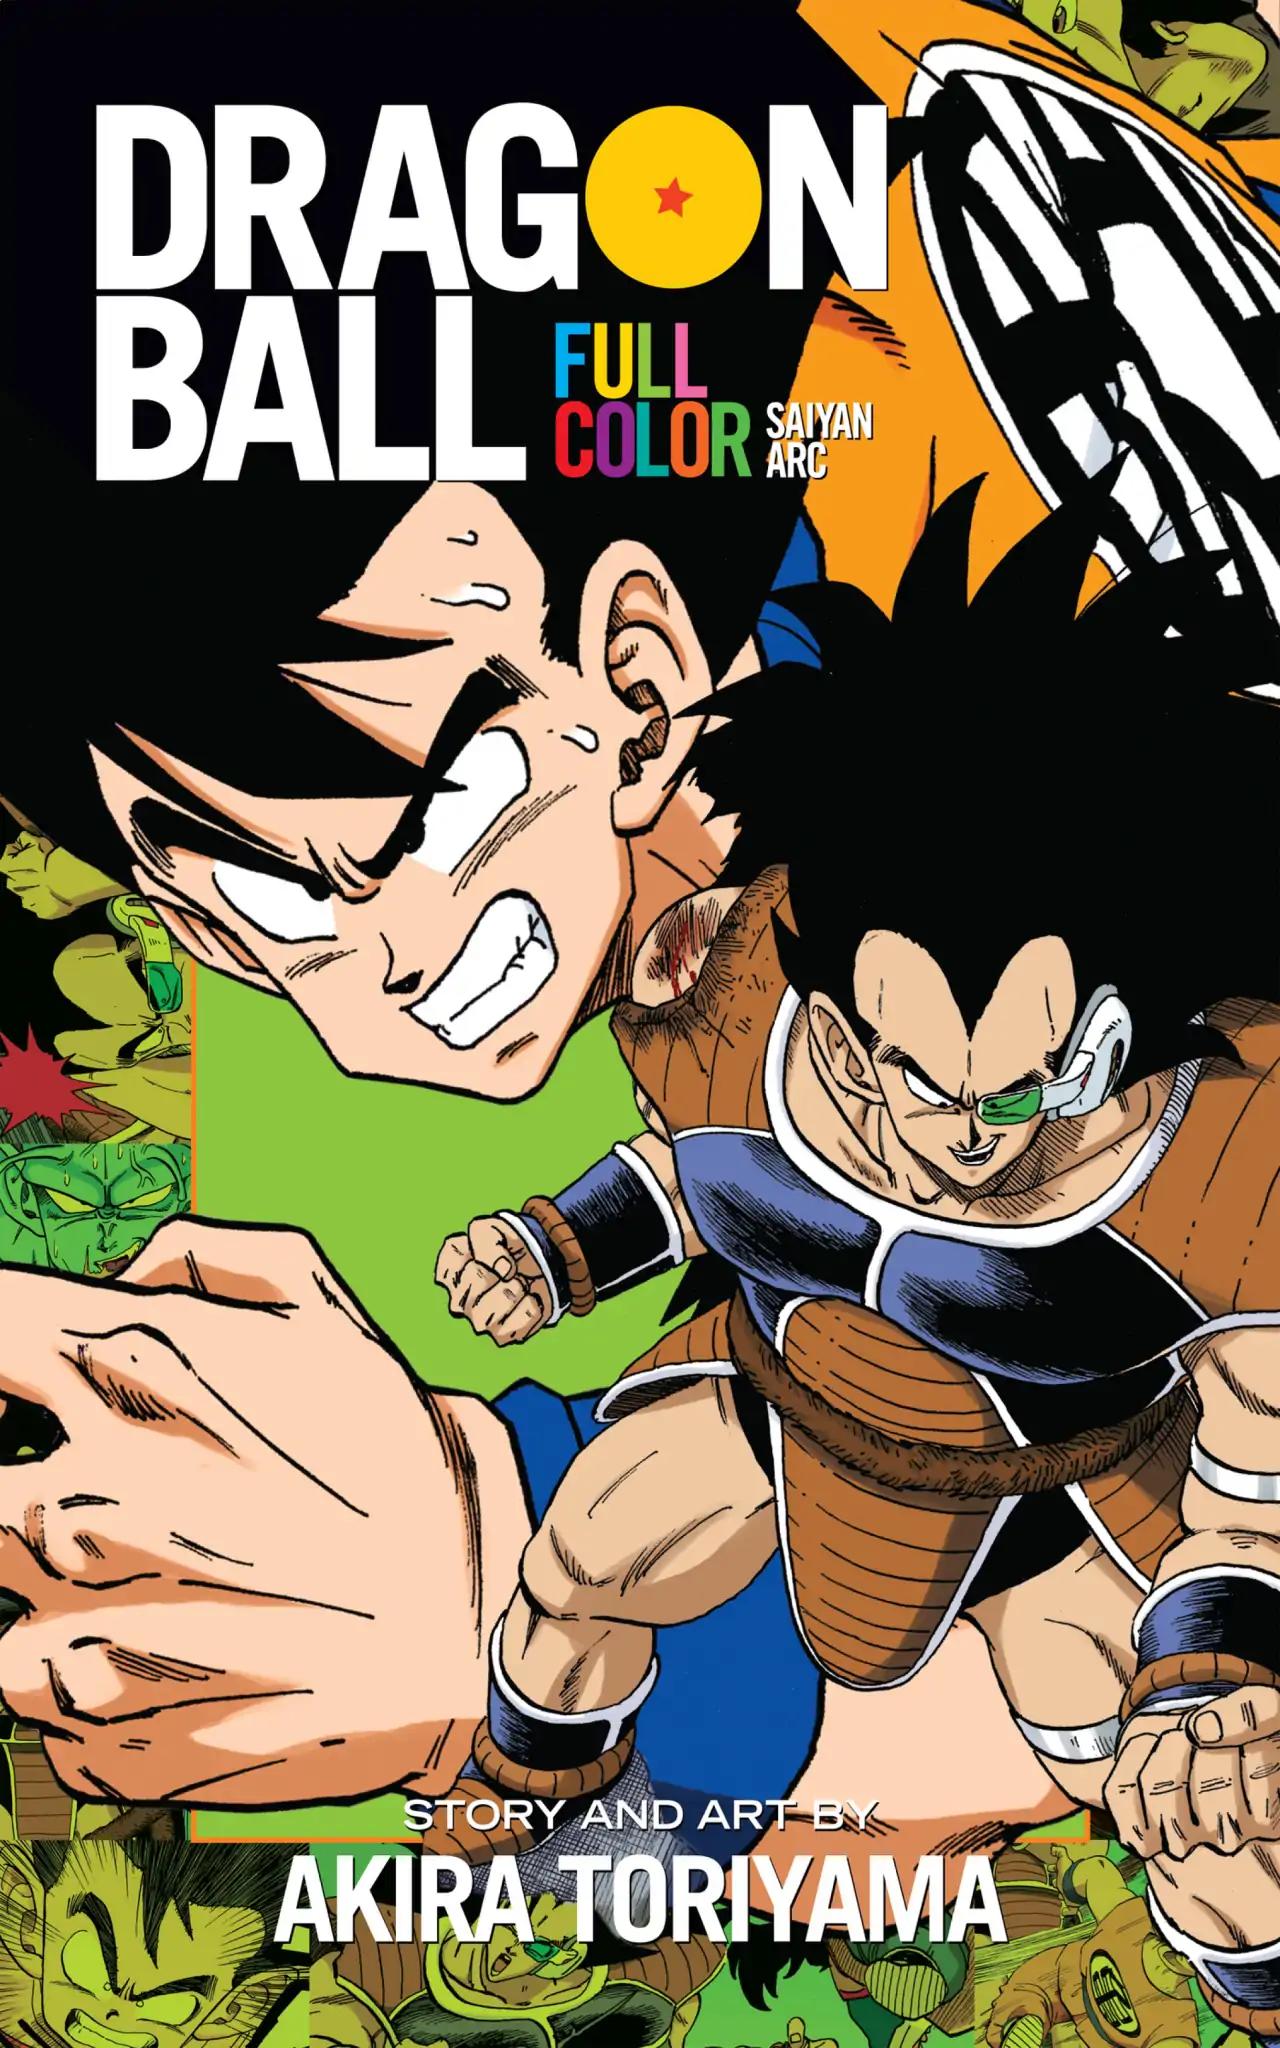 Dragon Ball Full Color Saiyan Arc Vol.1 Chapter 001: